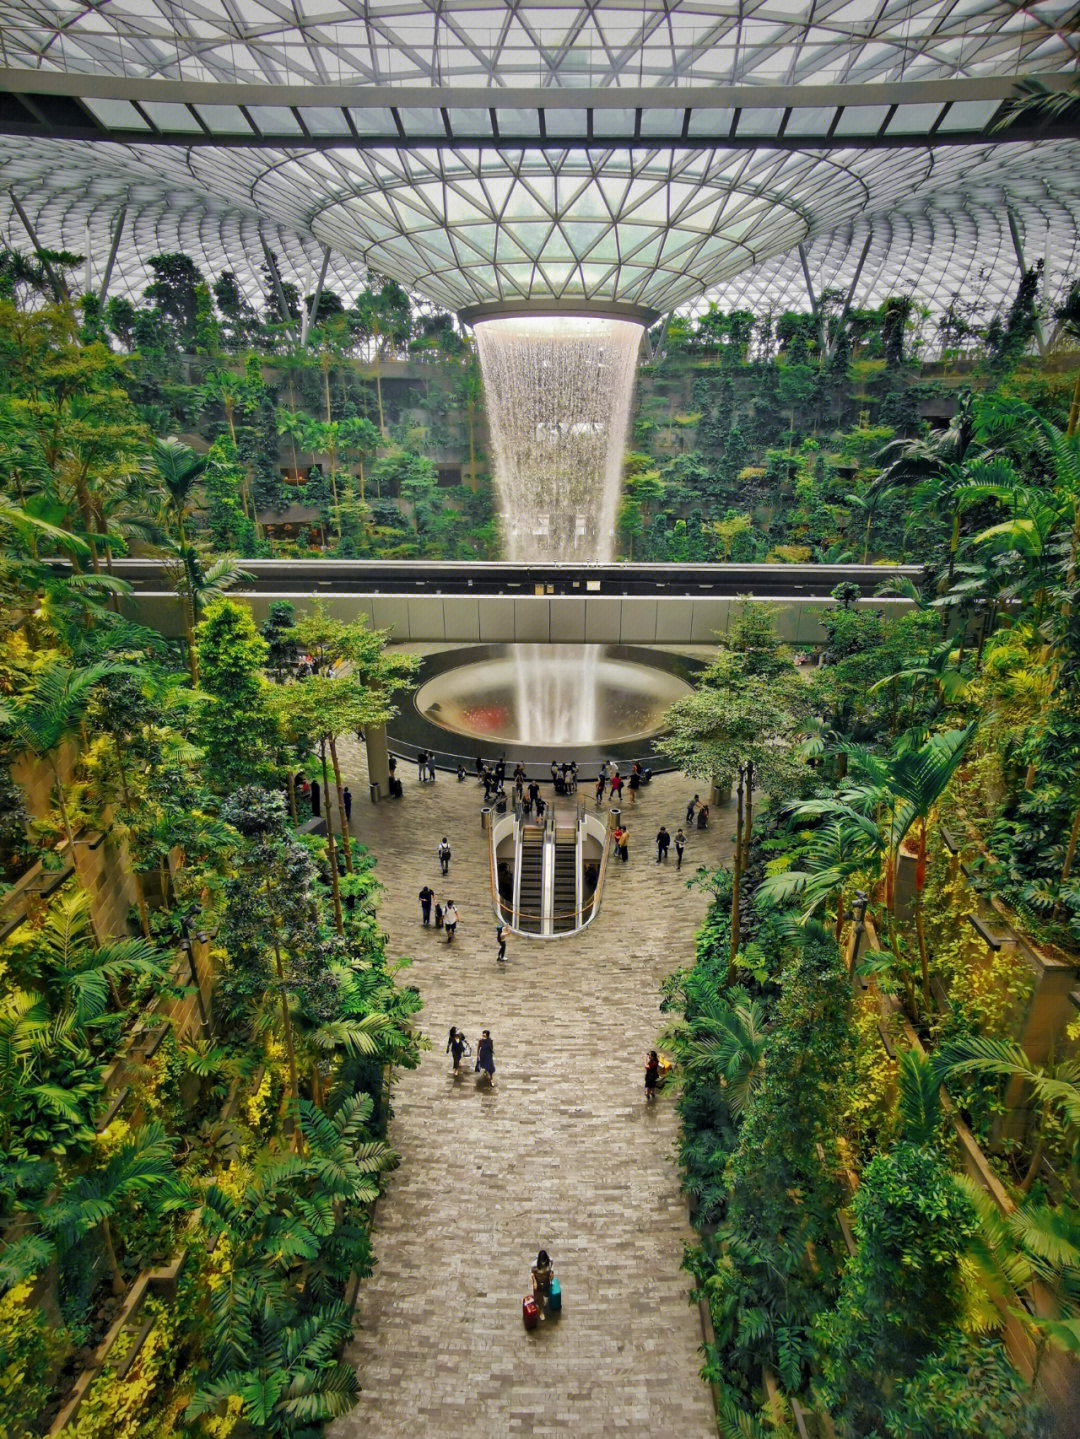 新加坡樟宜机场位置图片